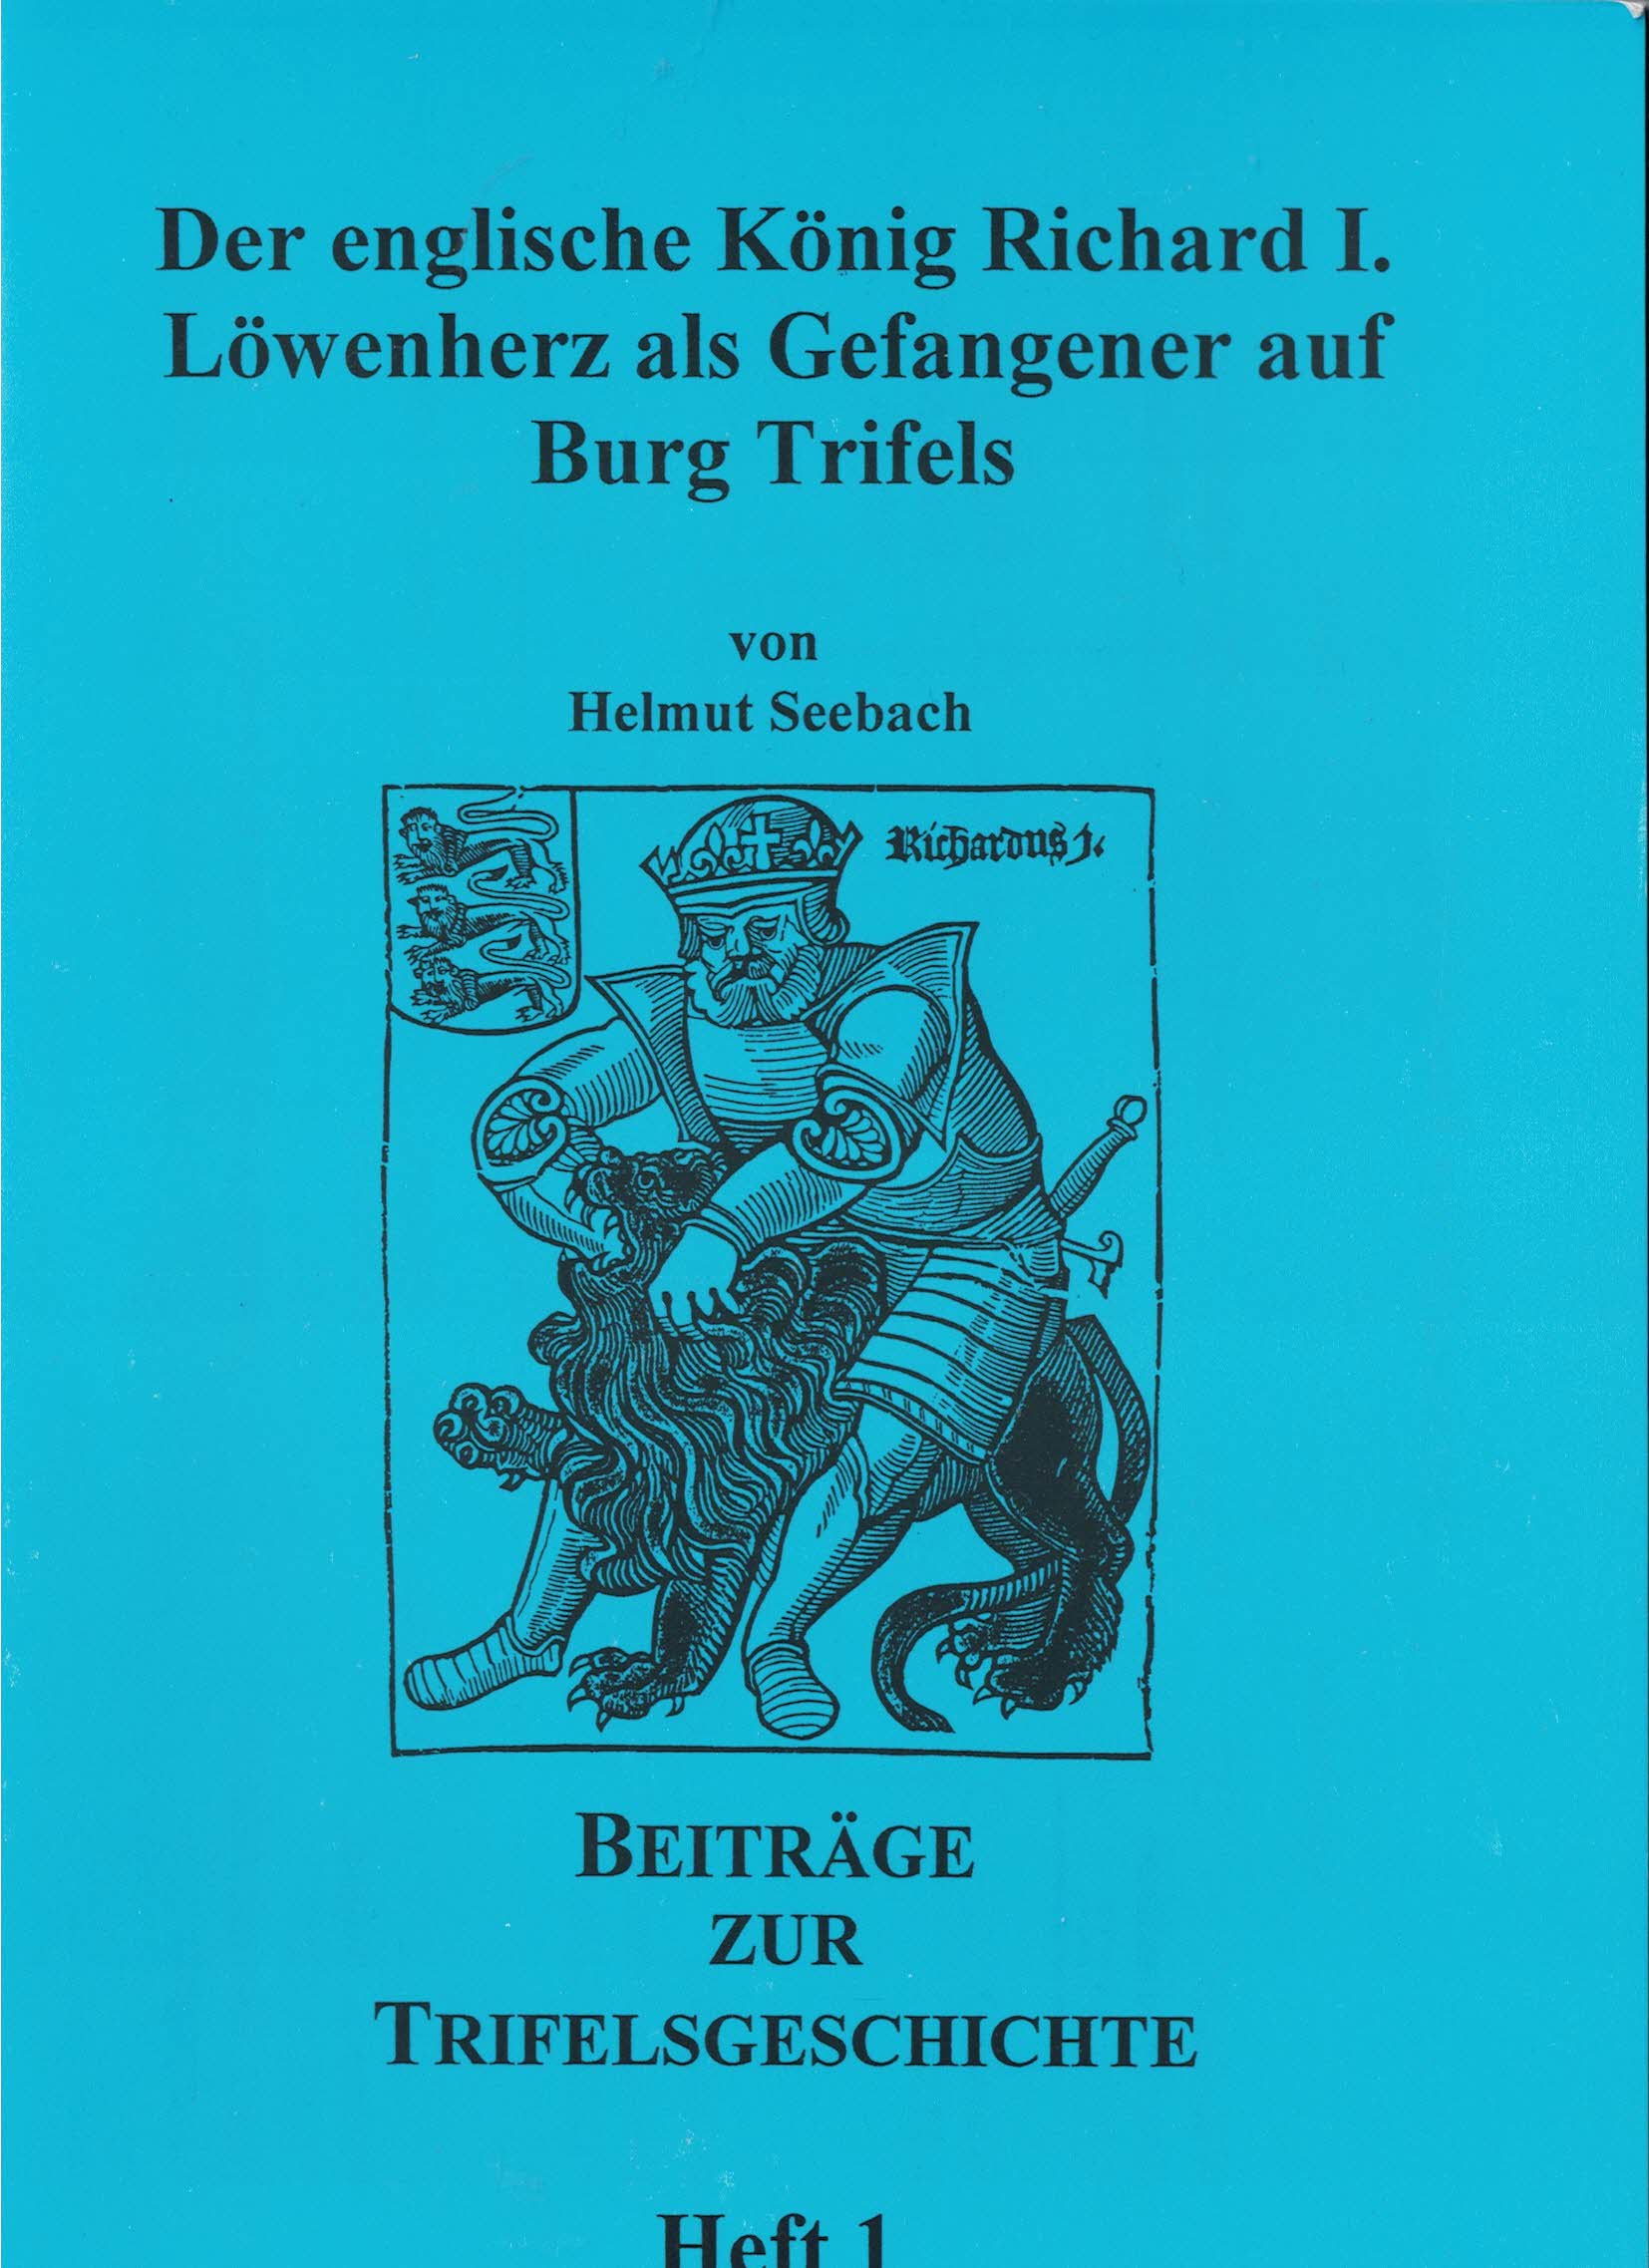 Der englische König Richard I. Löwenherz als Gefangener auf Burg Trifels. Heft 1.